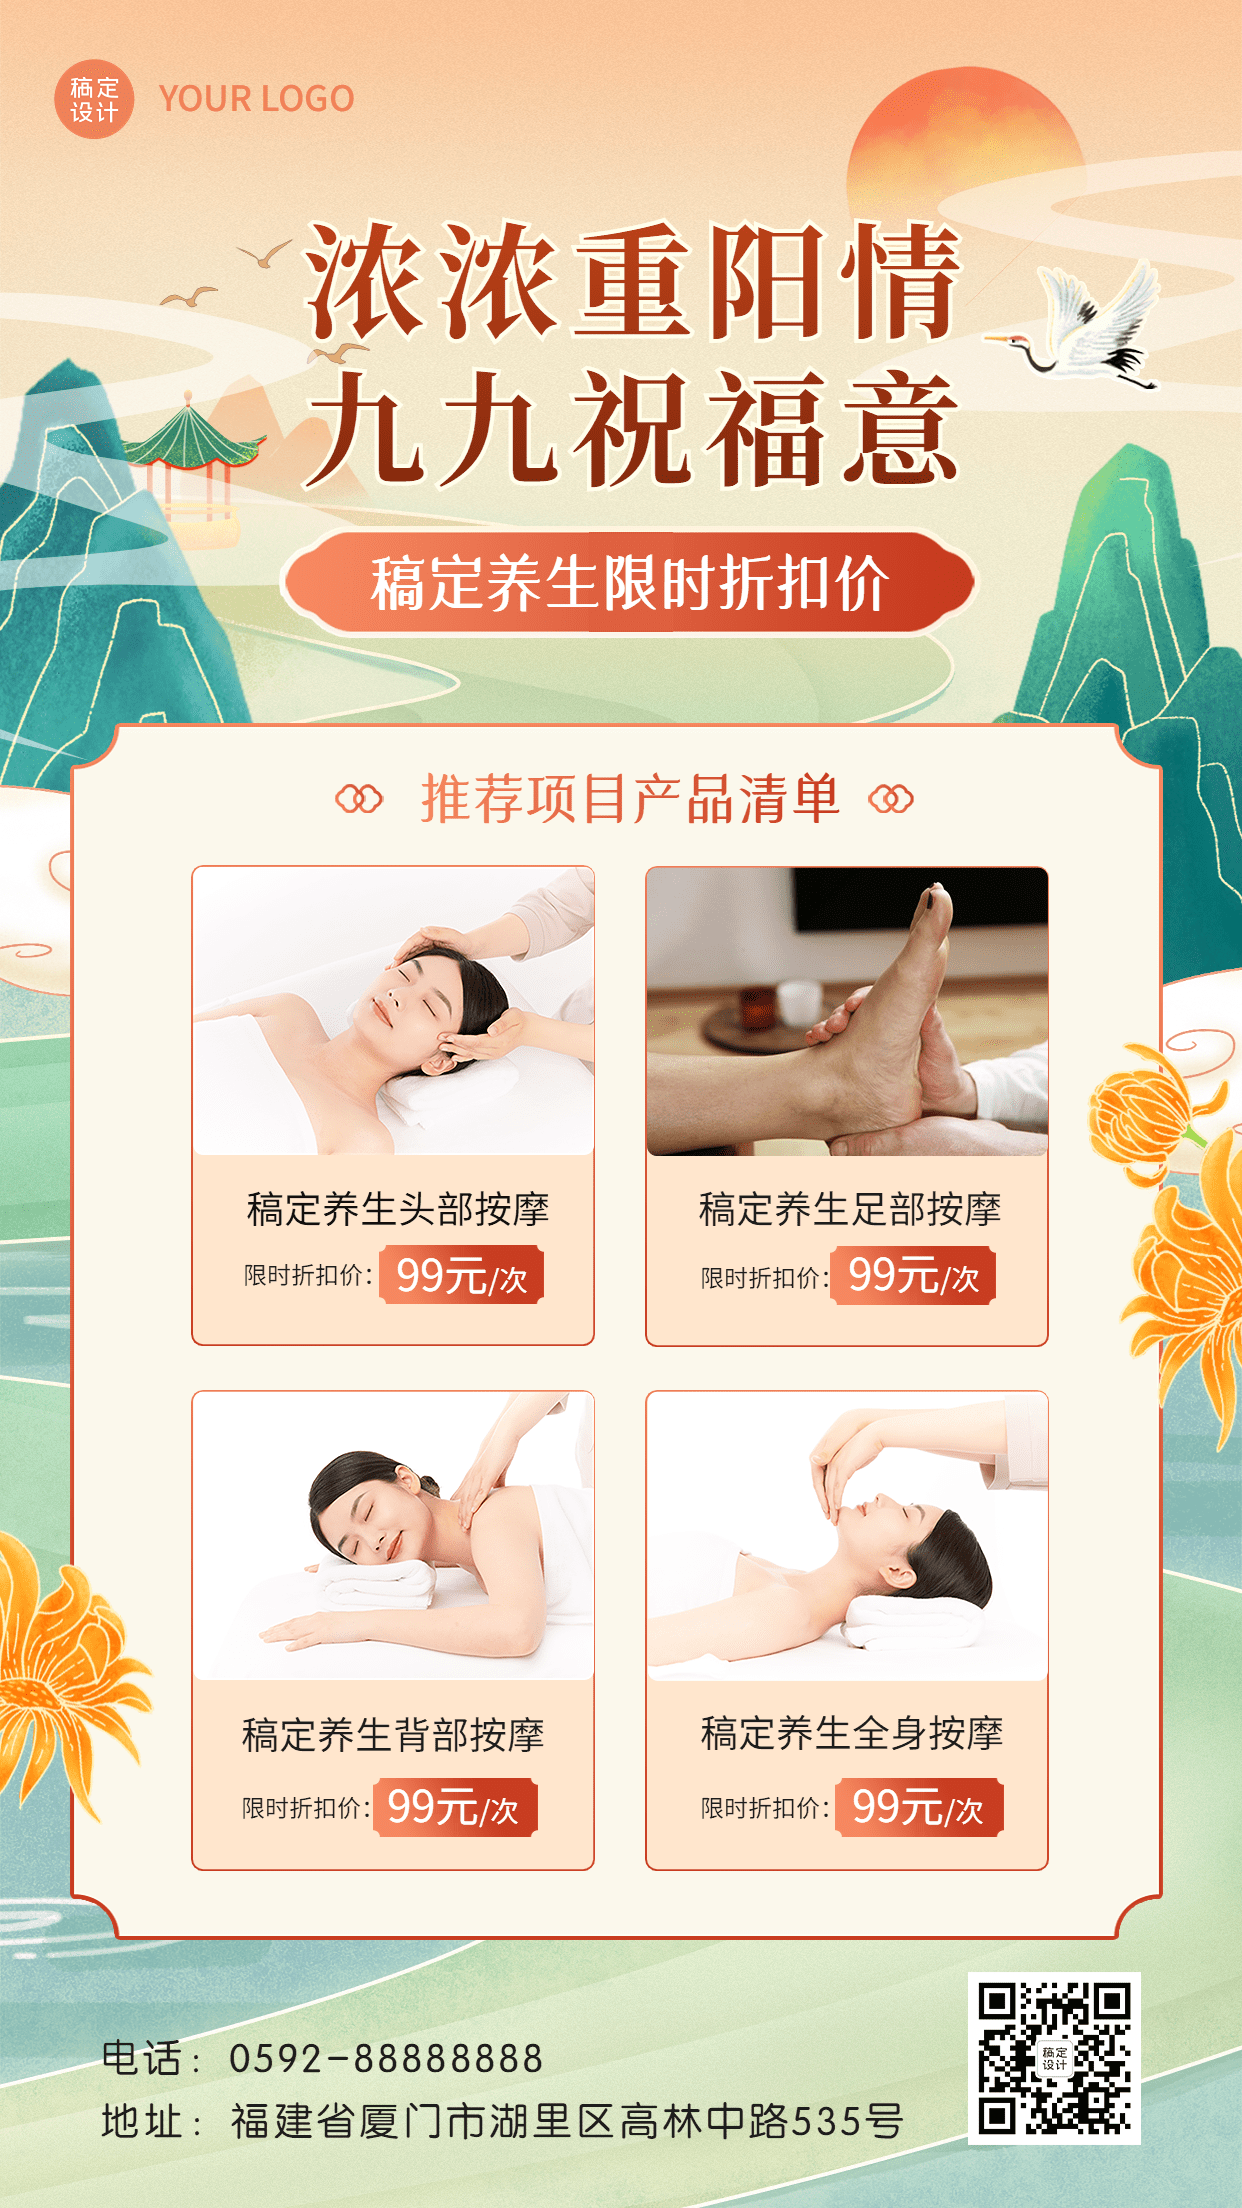 重阳节养生保健项目产品营销中国风手机海报预览效果